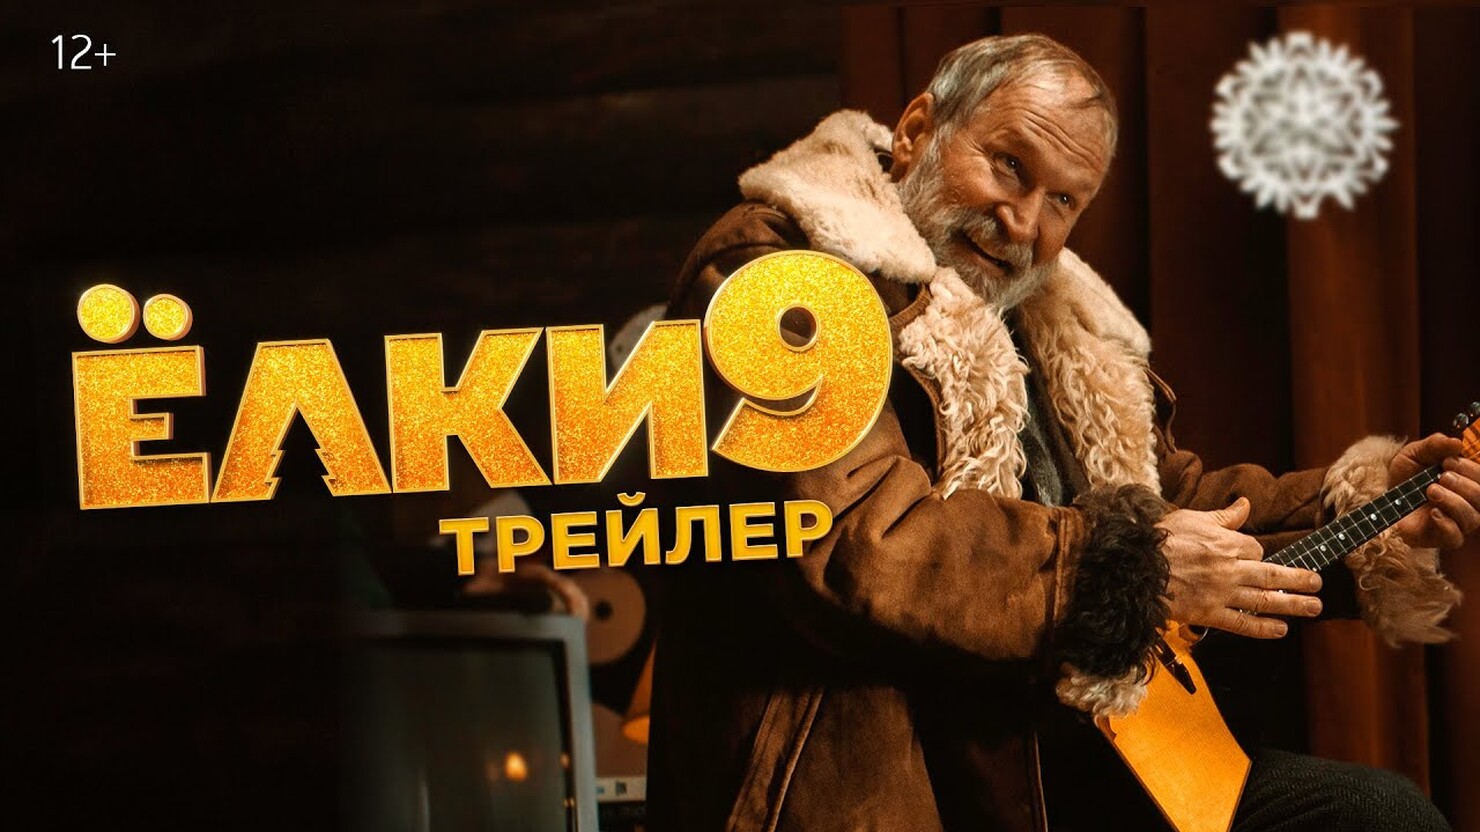 Серебряков, Добронравов и Цапник отмечают Новый год в трейлере комедии "Ёлки 9"